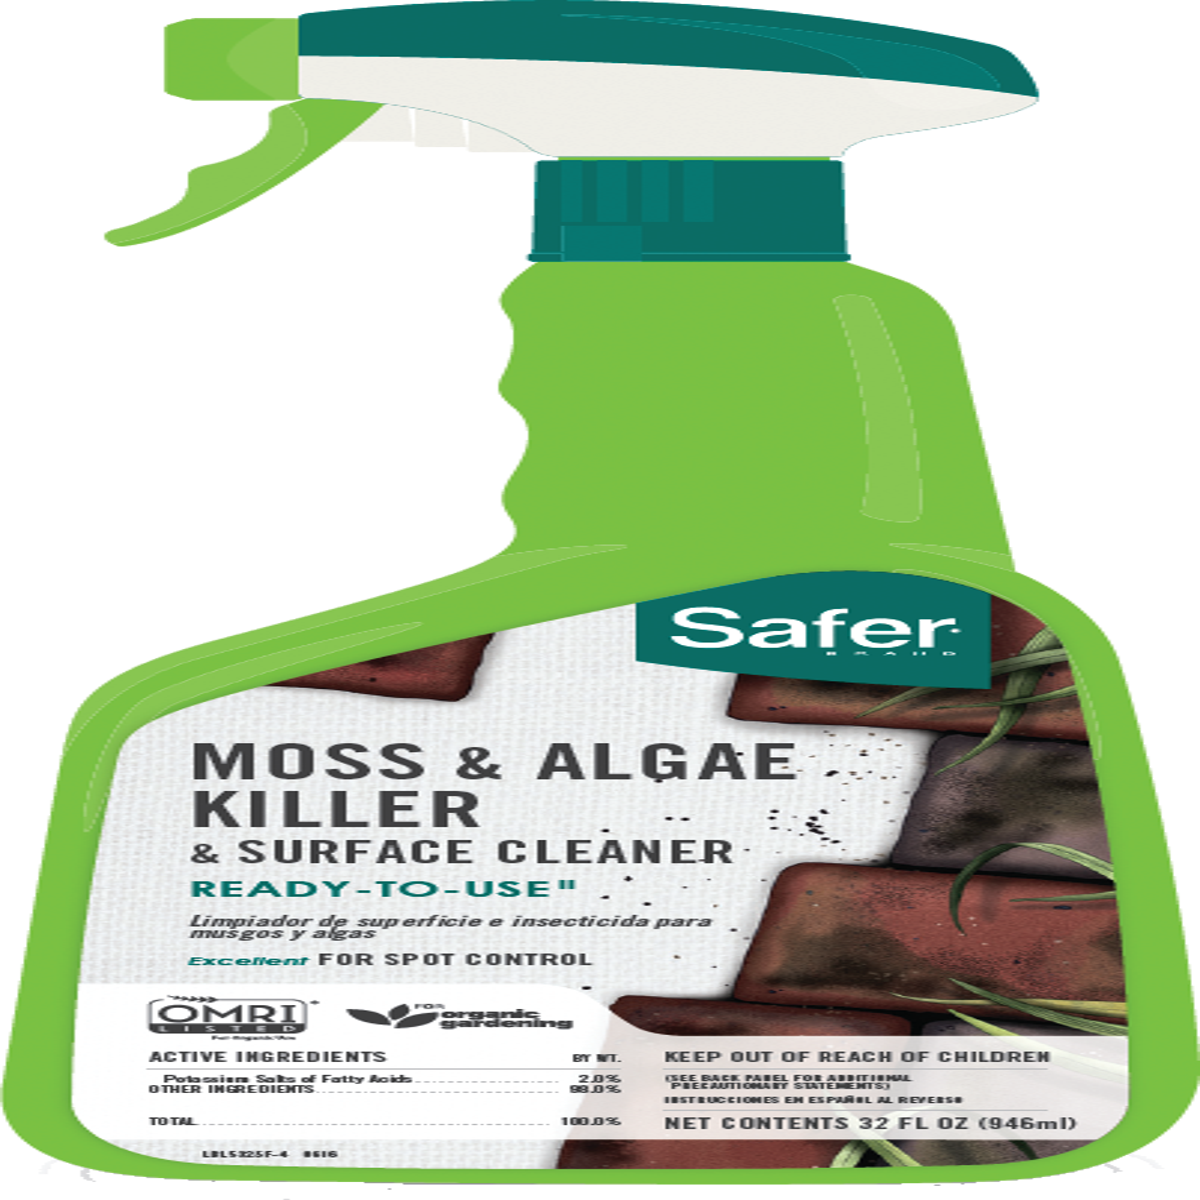 Moss & Algae Killer